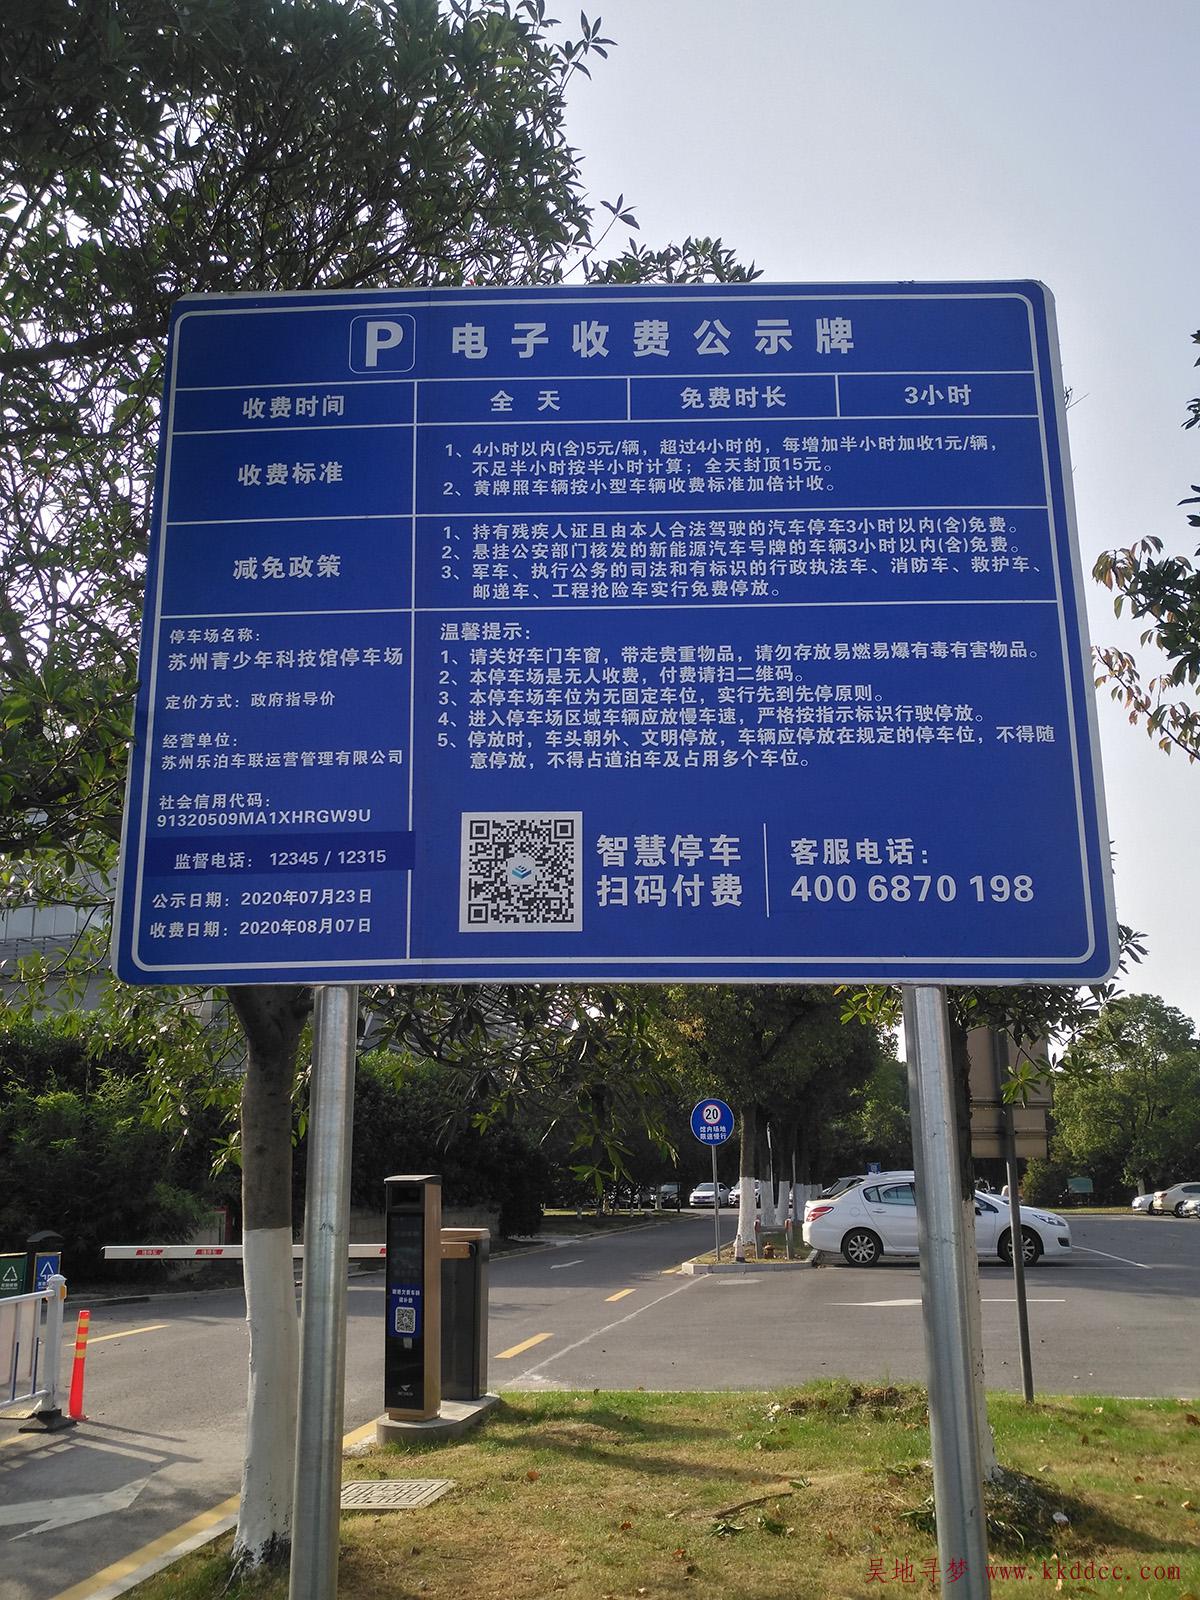 [停车收费]苏州青少年科技馆停车收费标准(吴江青少年宫)